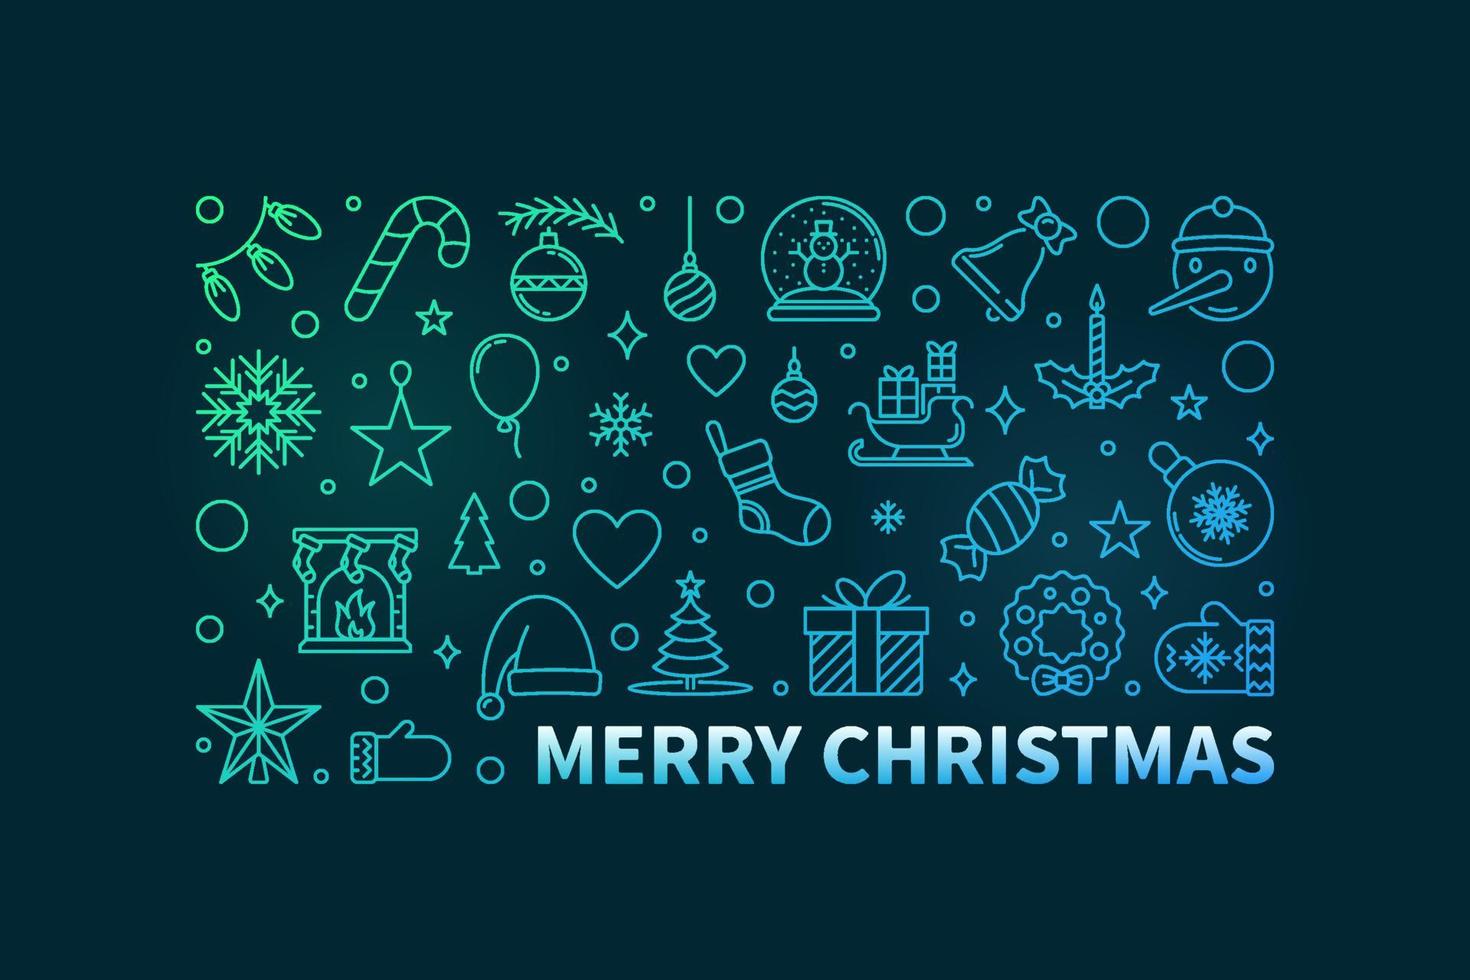 cartão de feliz natal com design de linha fina colorida vetor